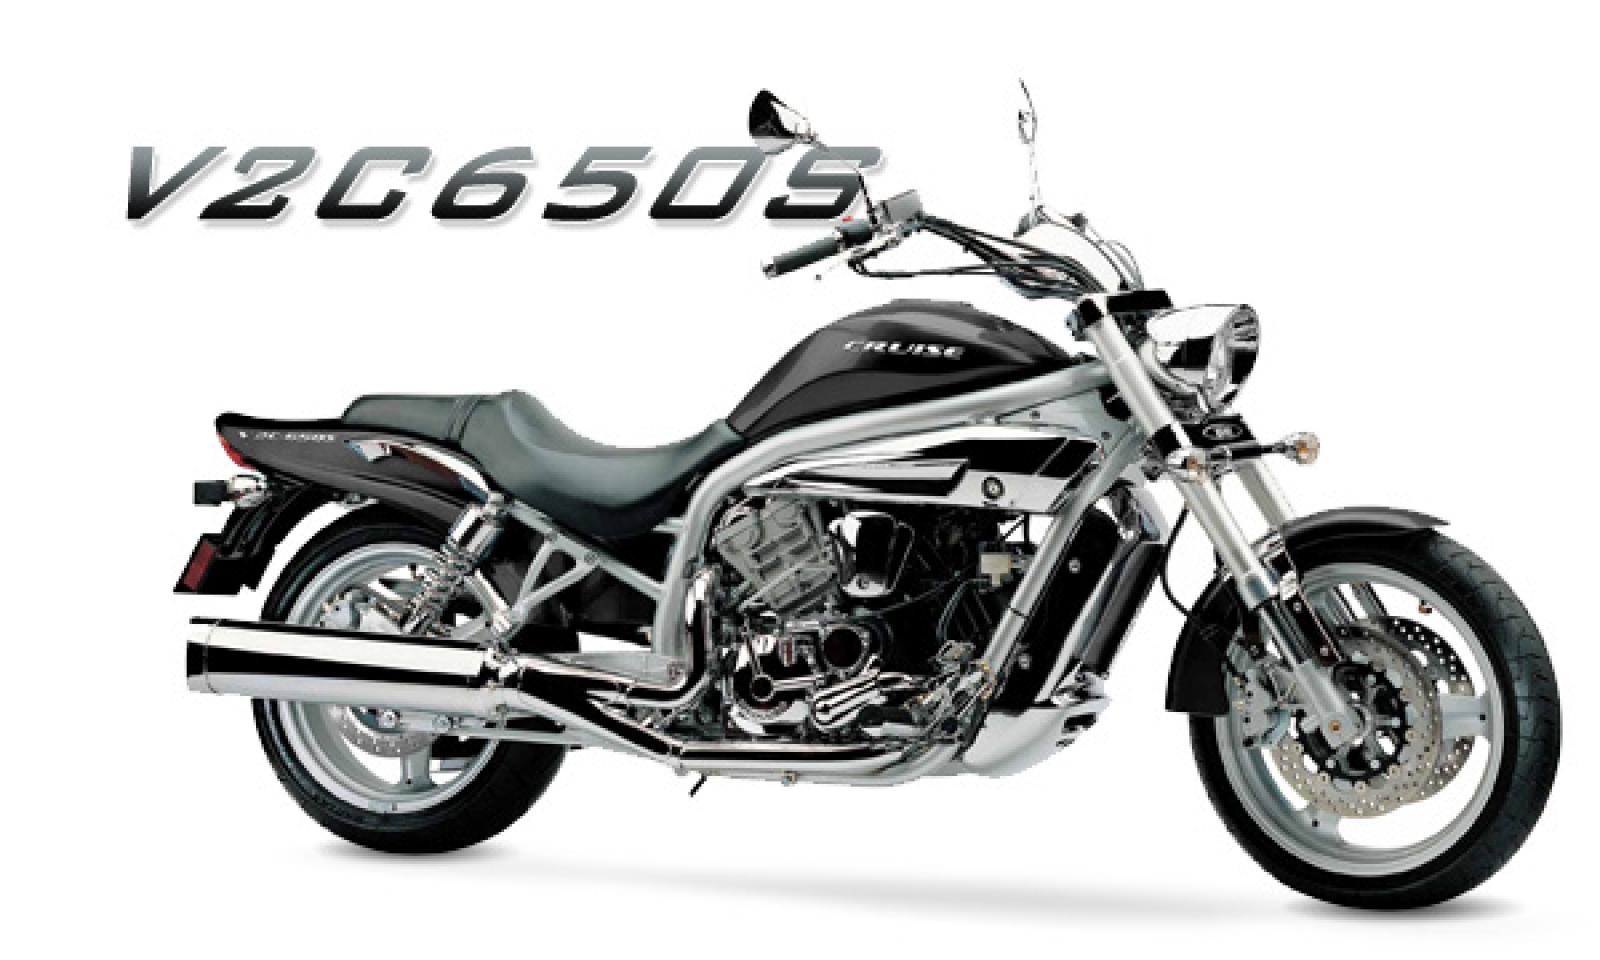 650 com. Мотоцикла um v2c 650s. Мотоцикл Юнайтед Моторс v2c-650s 2009г.в. S650 slforza. Мотоцикл Юнайтед Моторс v2c-640s.